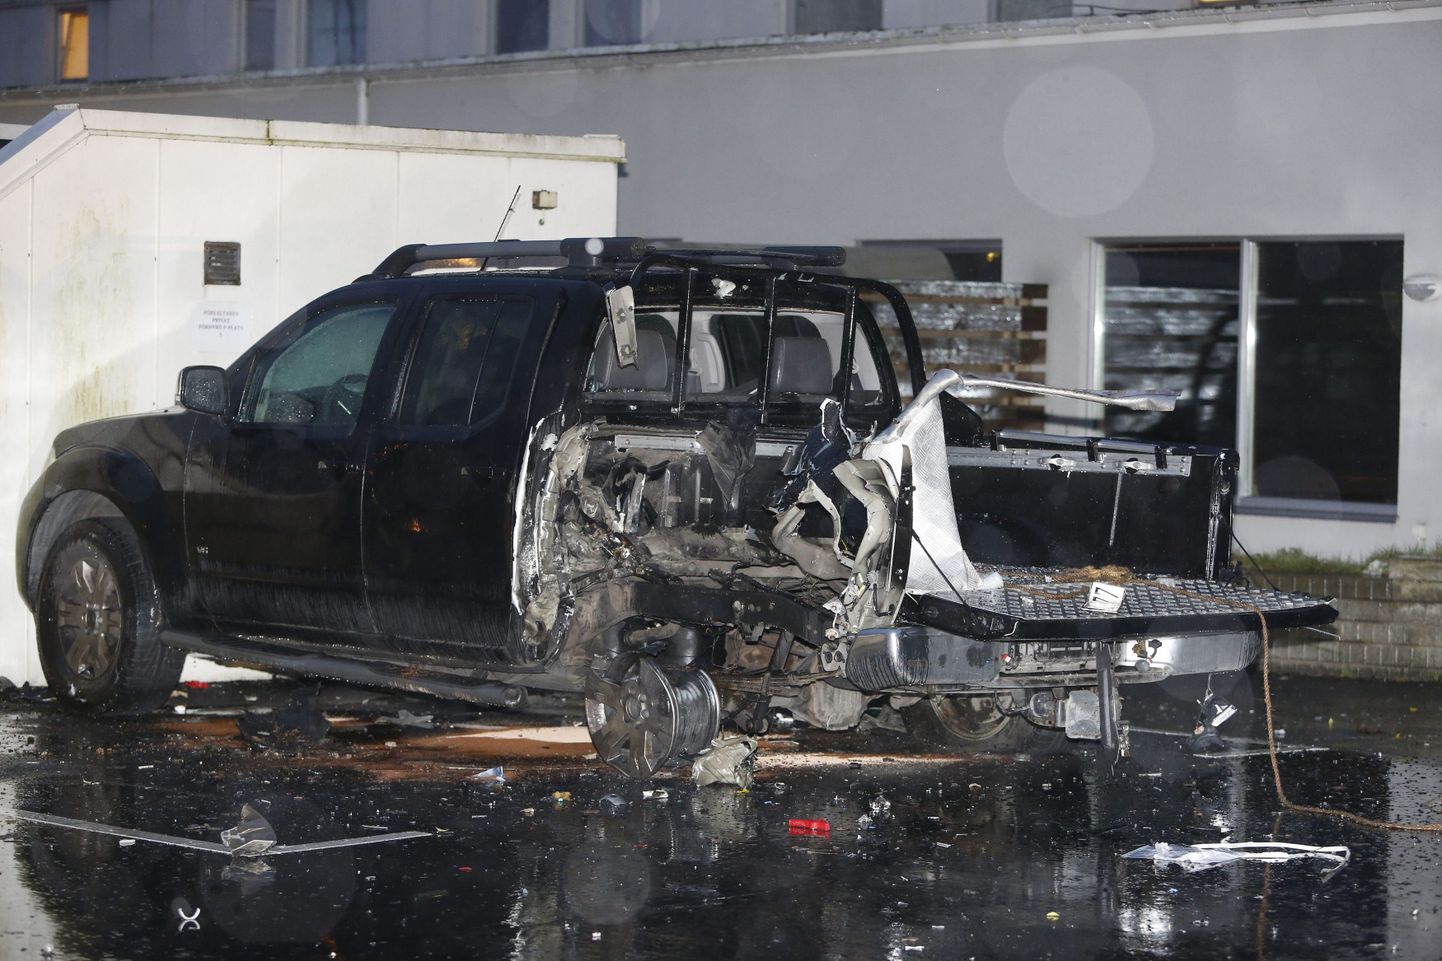 Malmö plahvatuses kahjustada saanud sõiduk